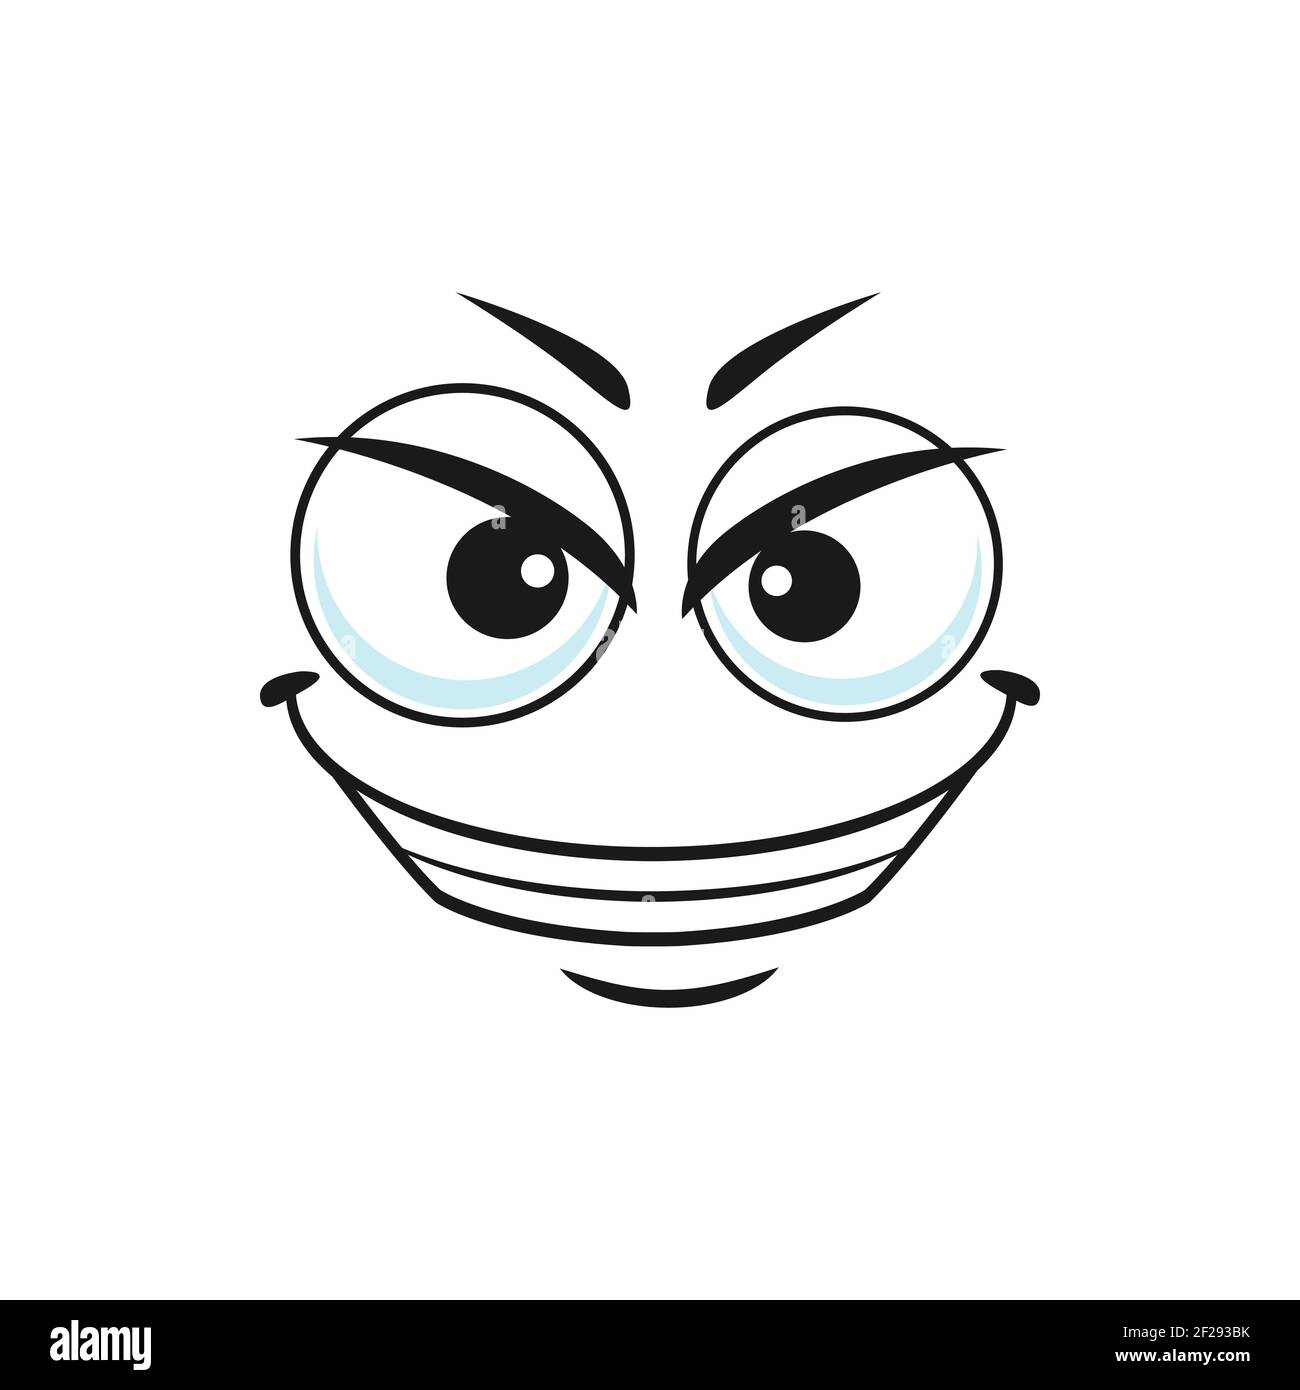 Emoticon sospette con icona deriva isolata del volto. Emoji satirico vettoriale con grandi occhi e sorriso, smiley scornful e quizzical linea art Illustrazione Vettoriale